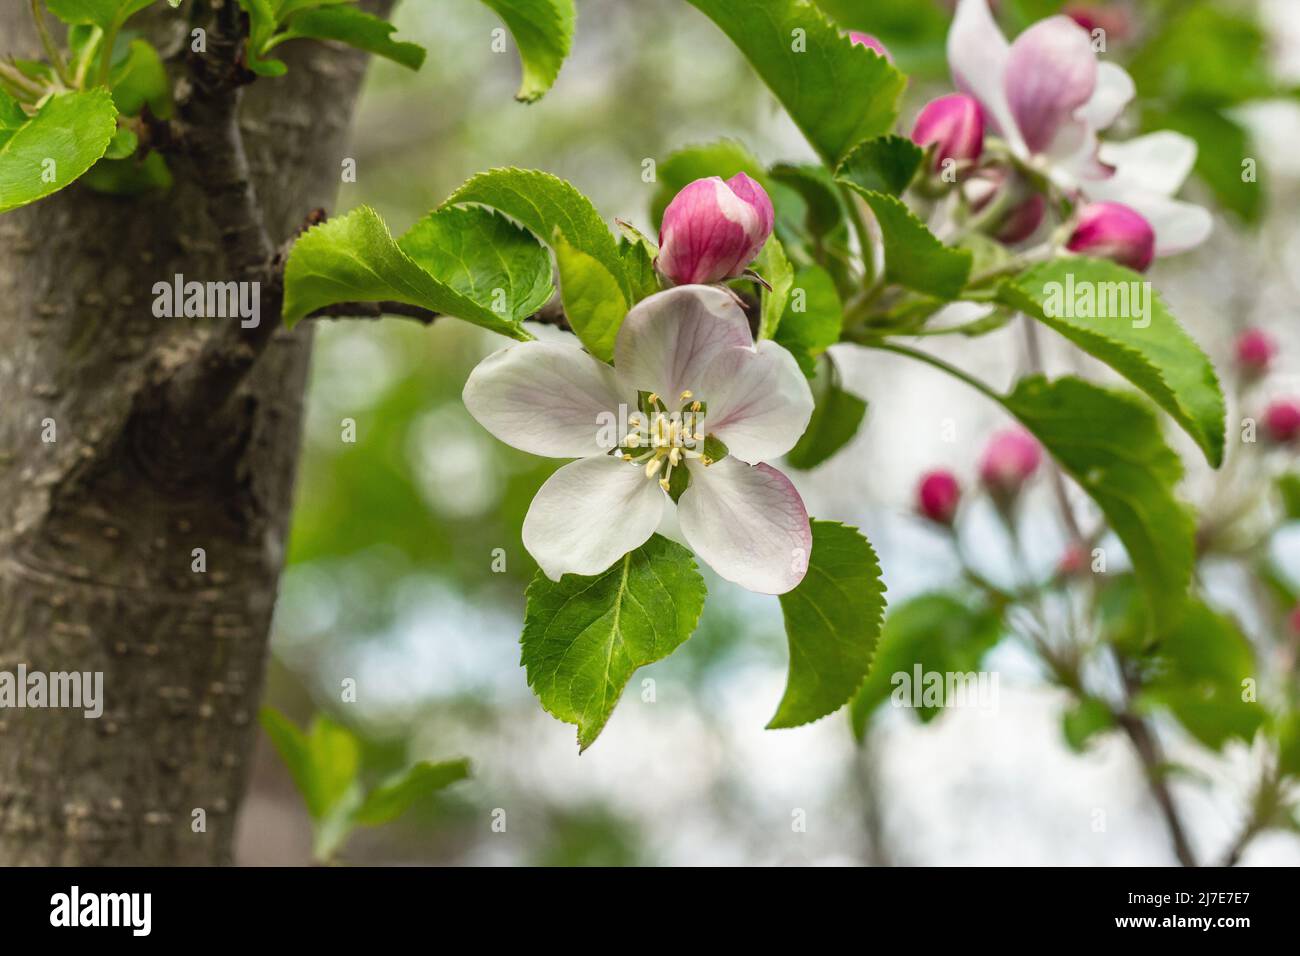 Blühender Apfelbaum im Garten. Frühling saisonal von wachsenden Pflanzen.  Gartenkonzept Hintergrund, floralen Stil Stockfotografie - Alamy